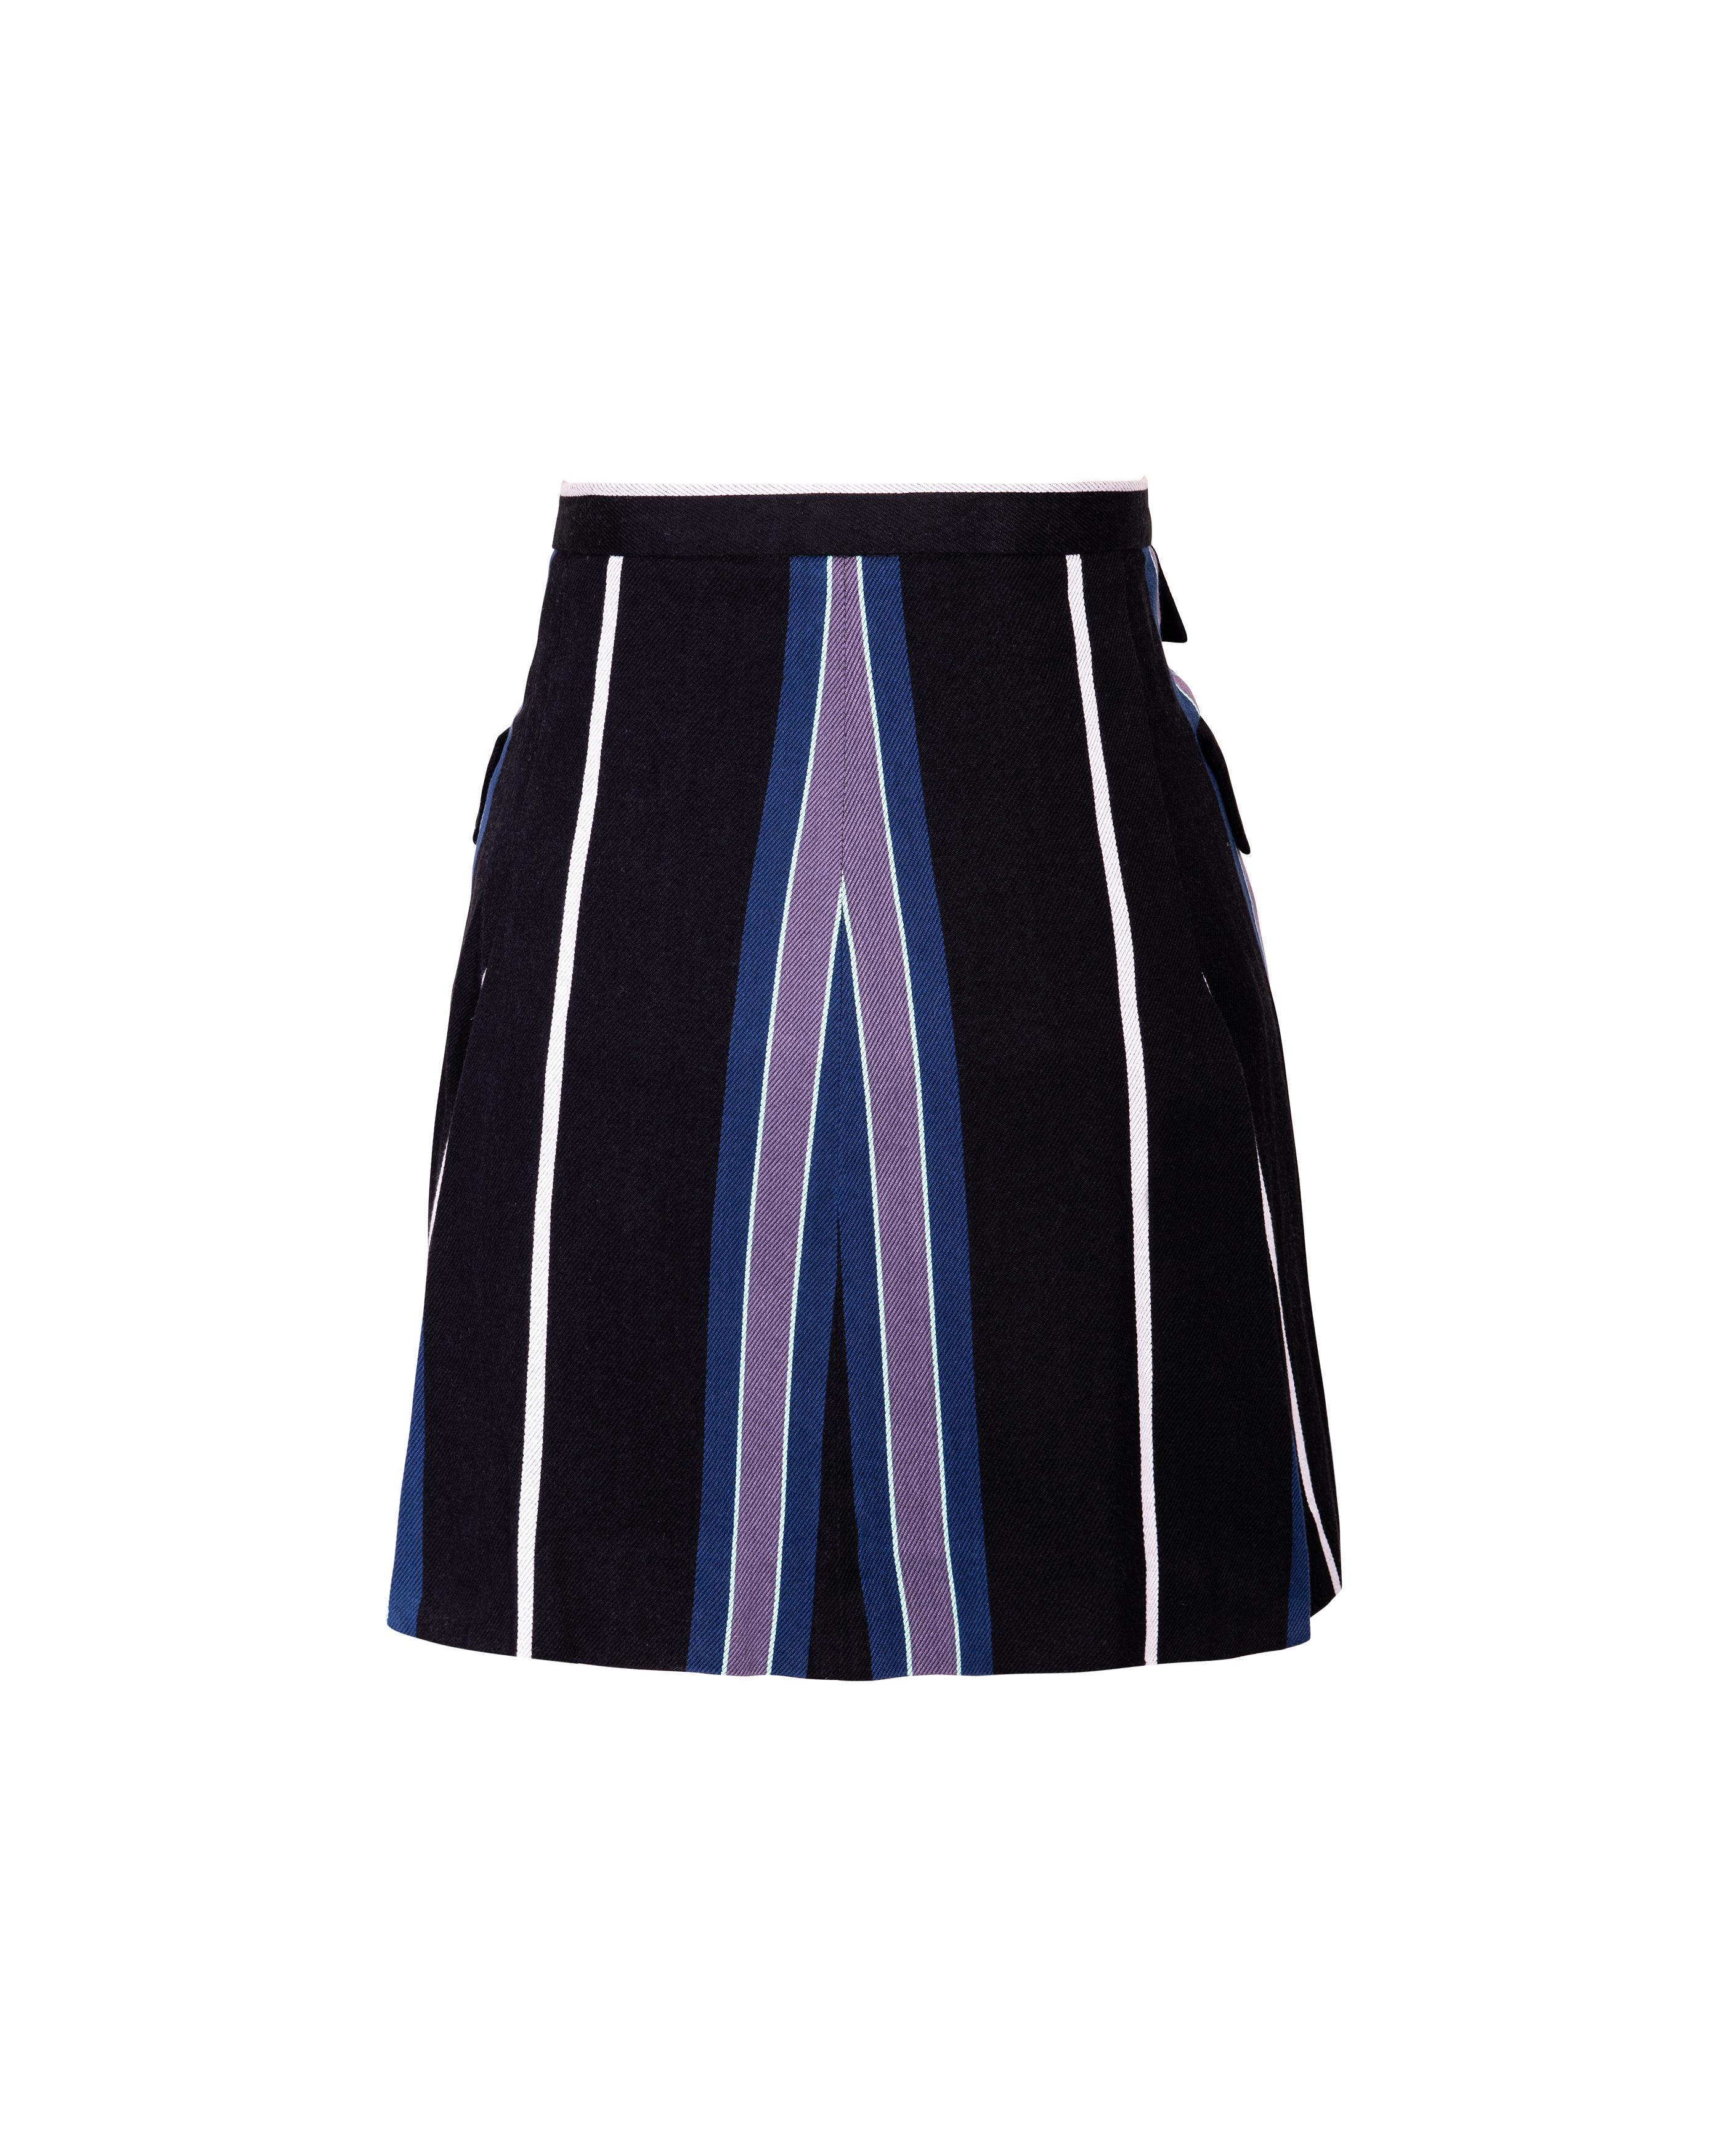 S/S 1994 Vivienne Westwood Cotton Striped Skirt Suit Set 7